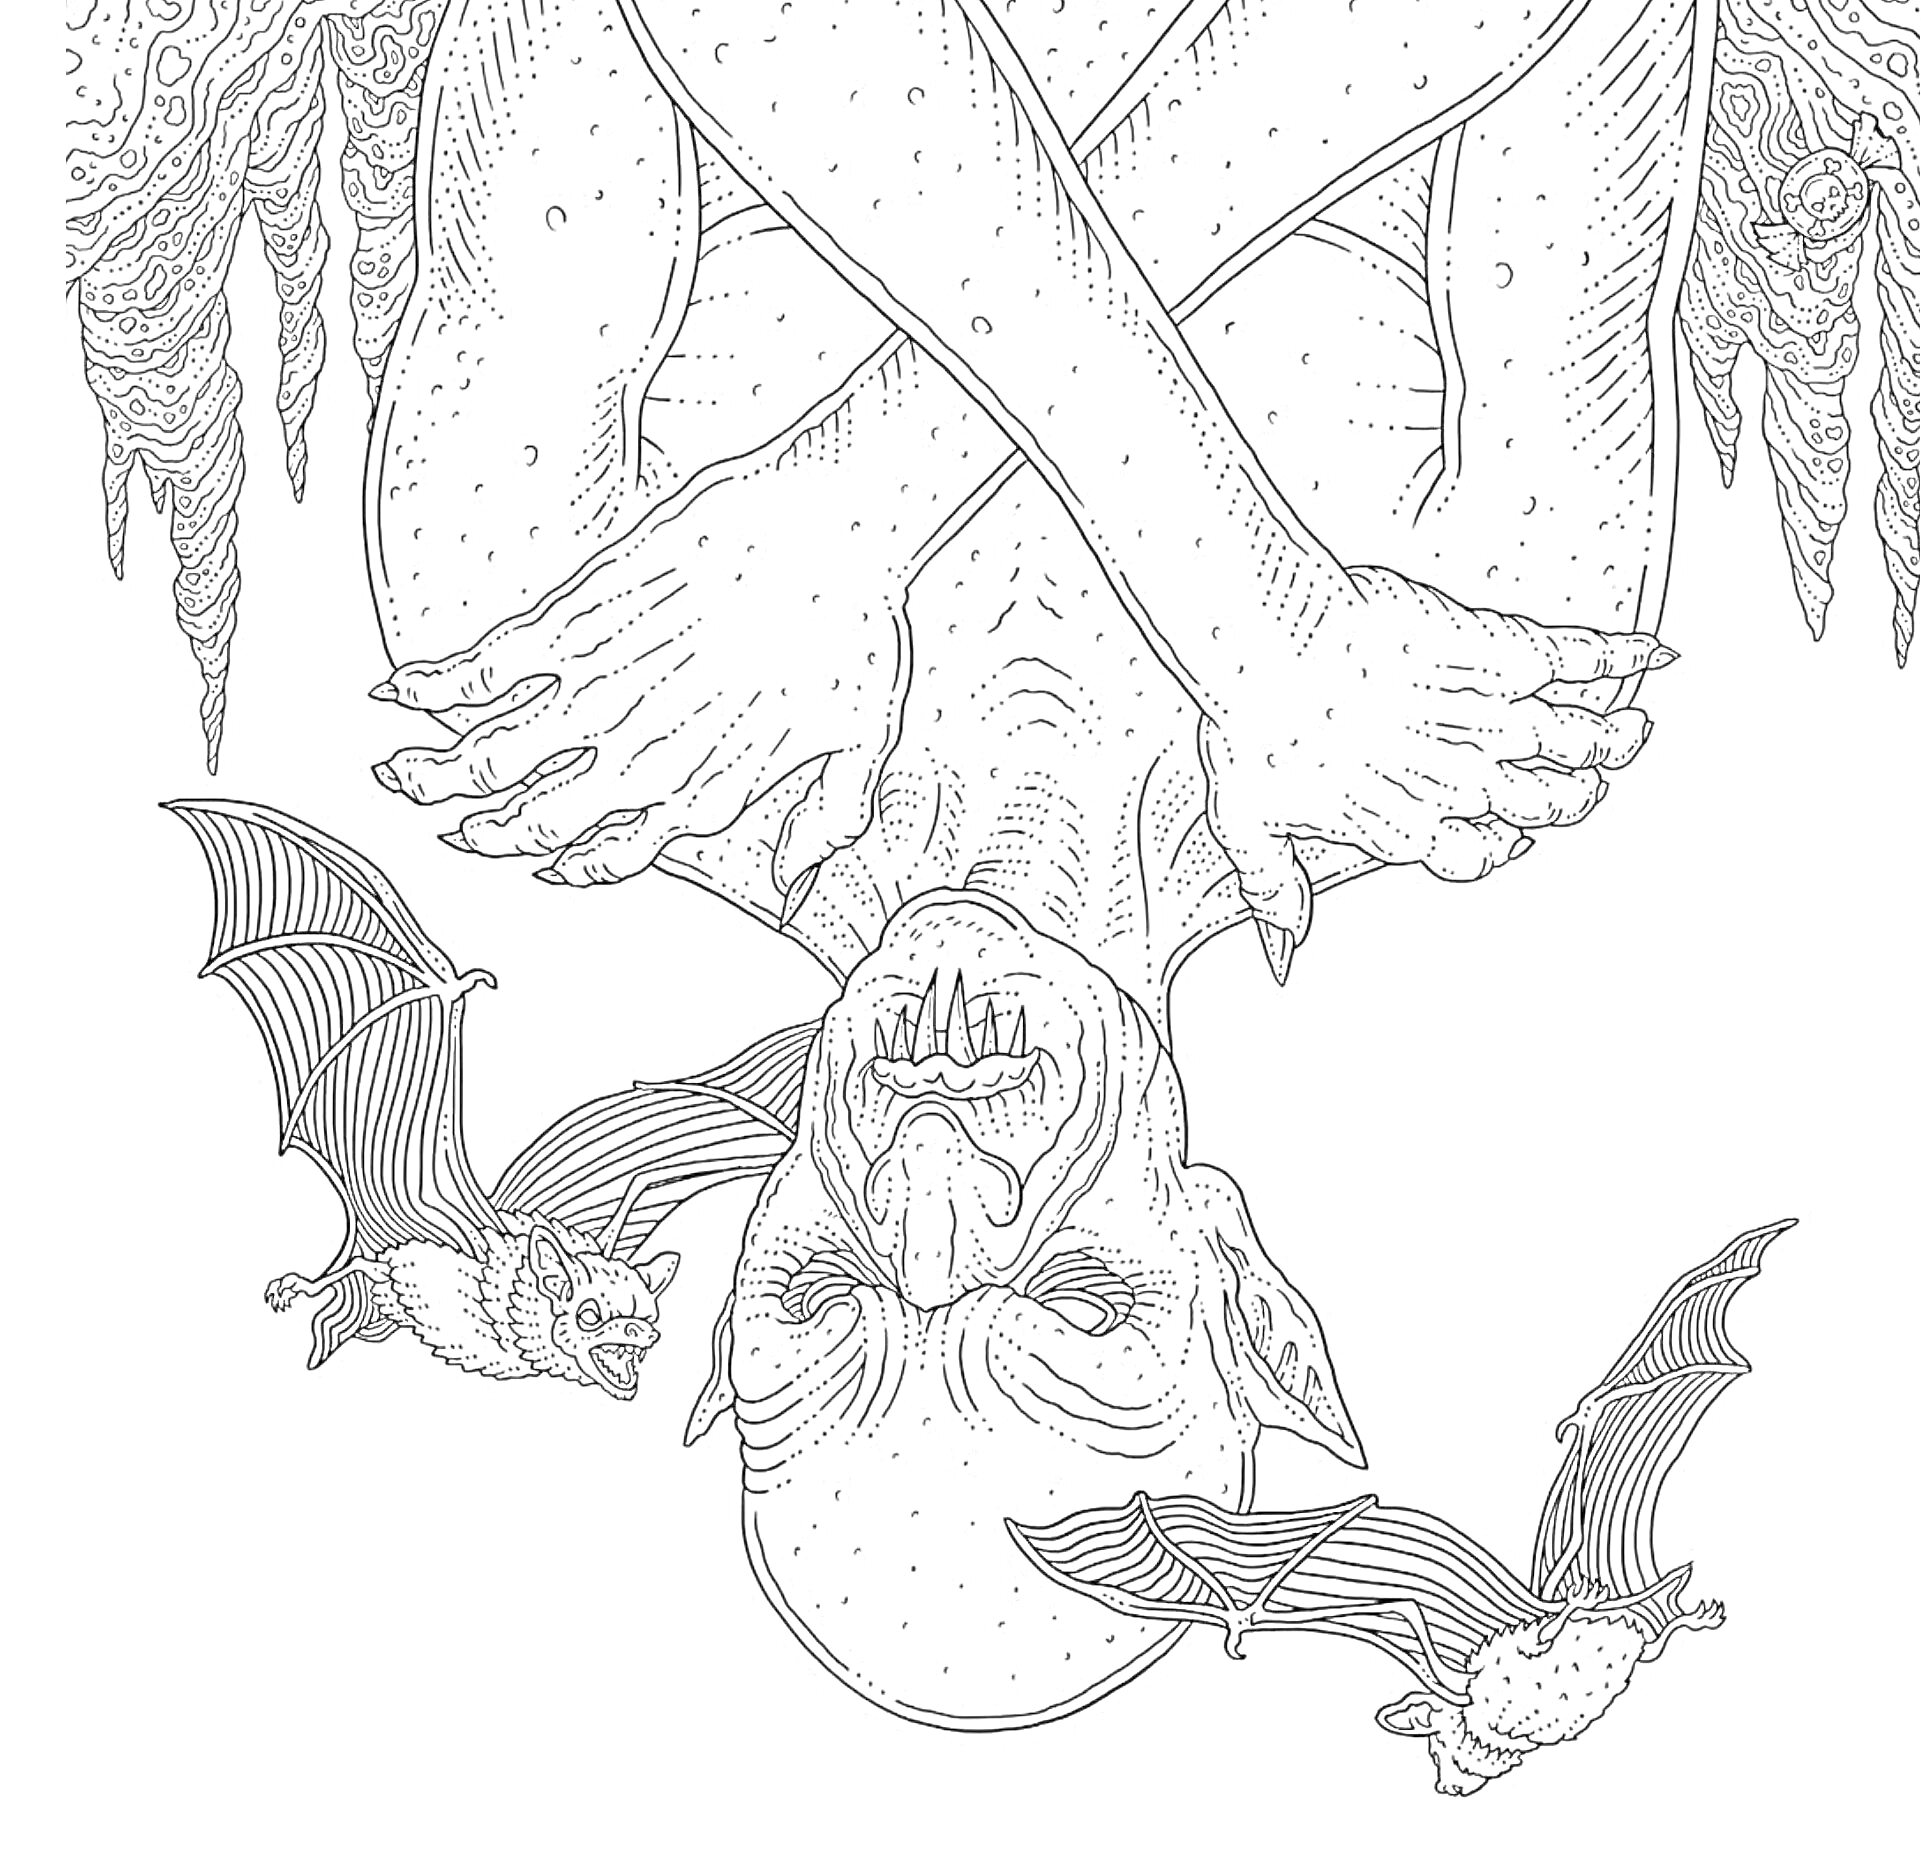 Раскраска Вампир, висящий вверх ногами с руками, скрещенными на груди, окруженный двумя летучими мышами, сталактитами и сталагмитами